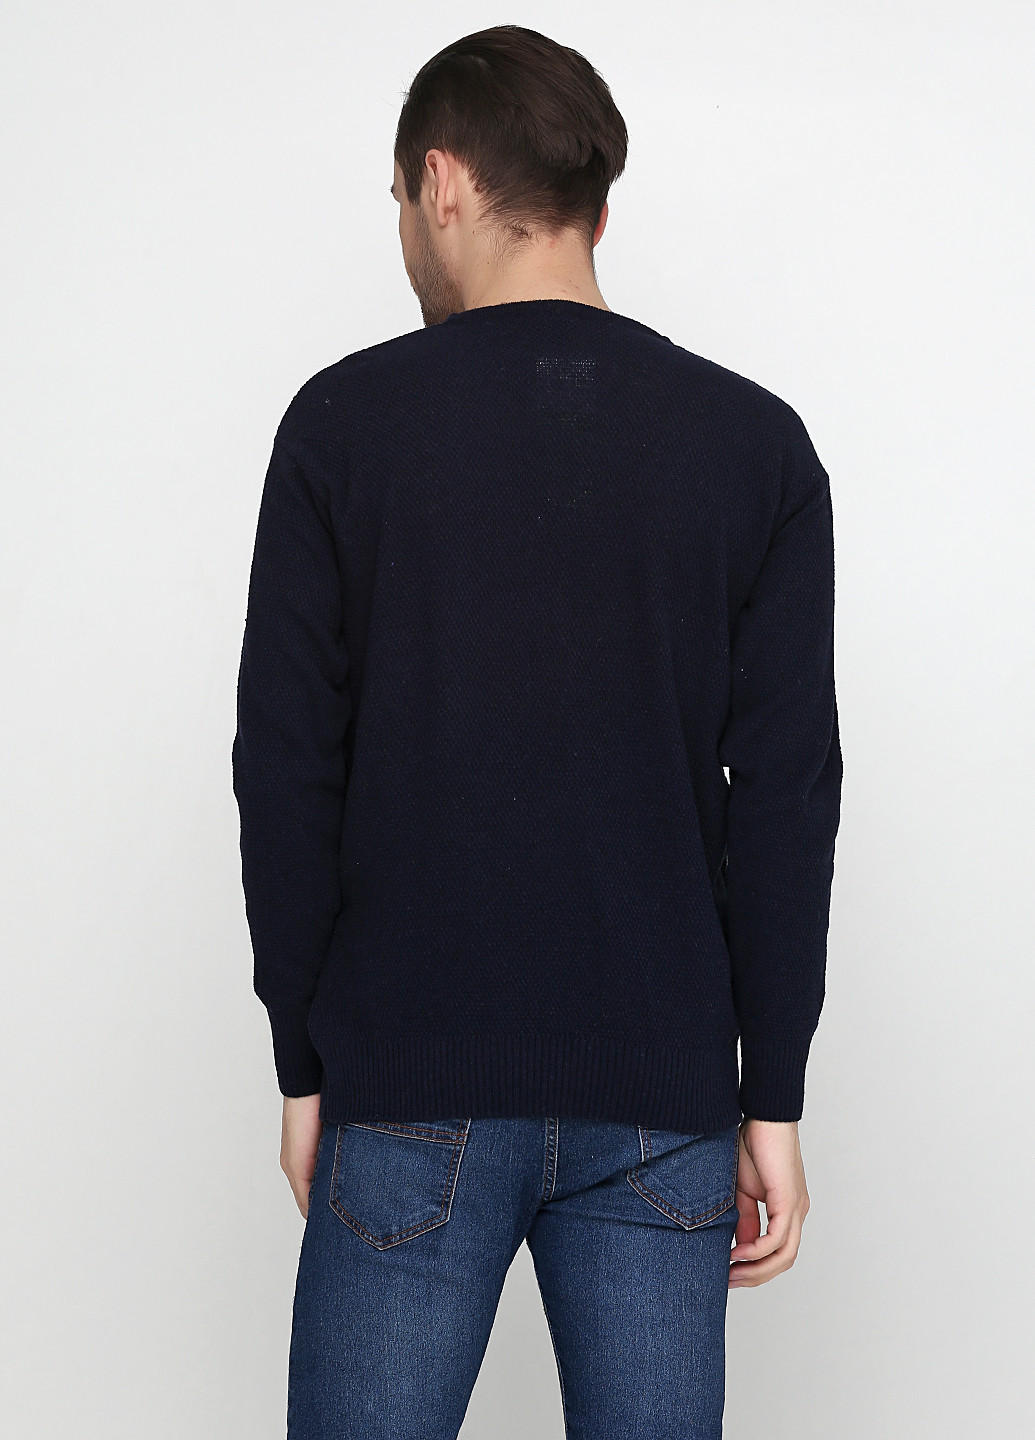 Темно-синий демисезонный пуловер пуловер Enbiya